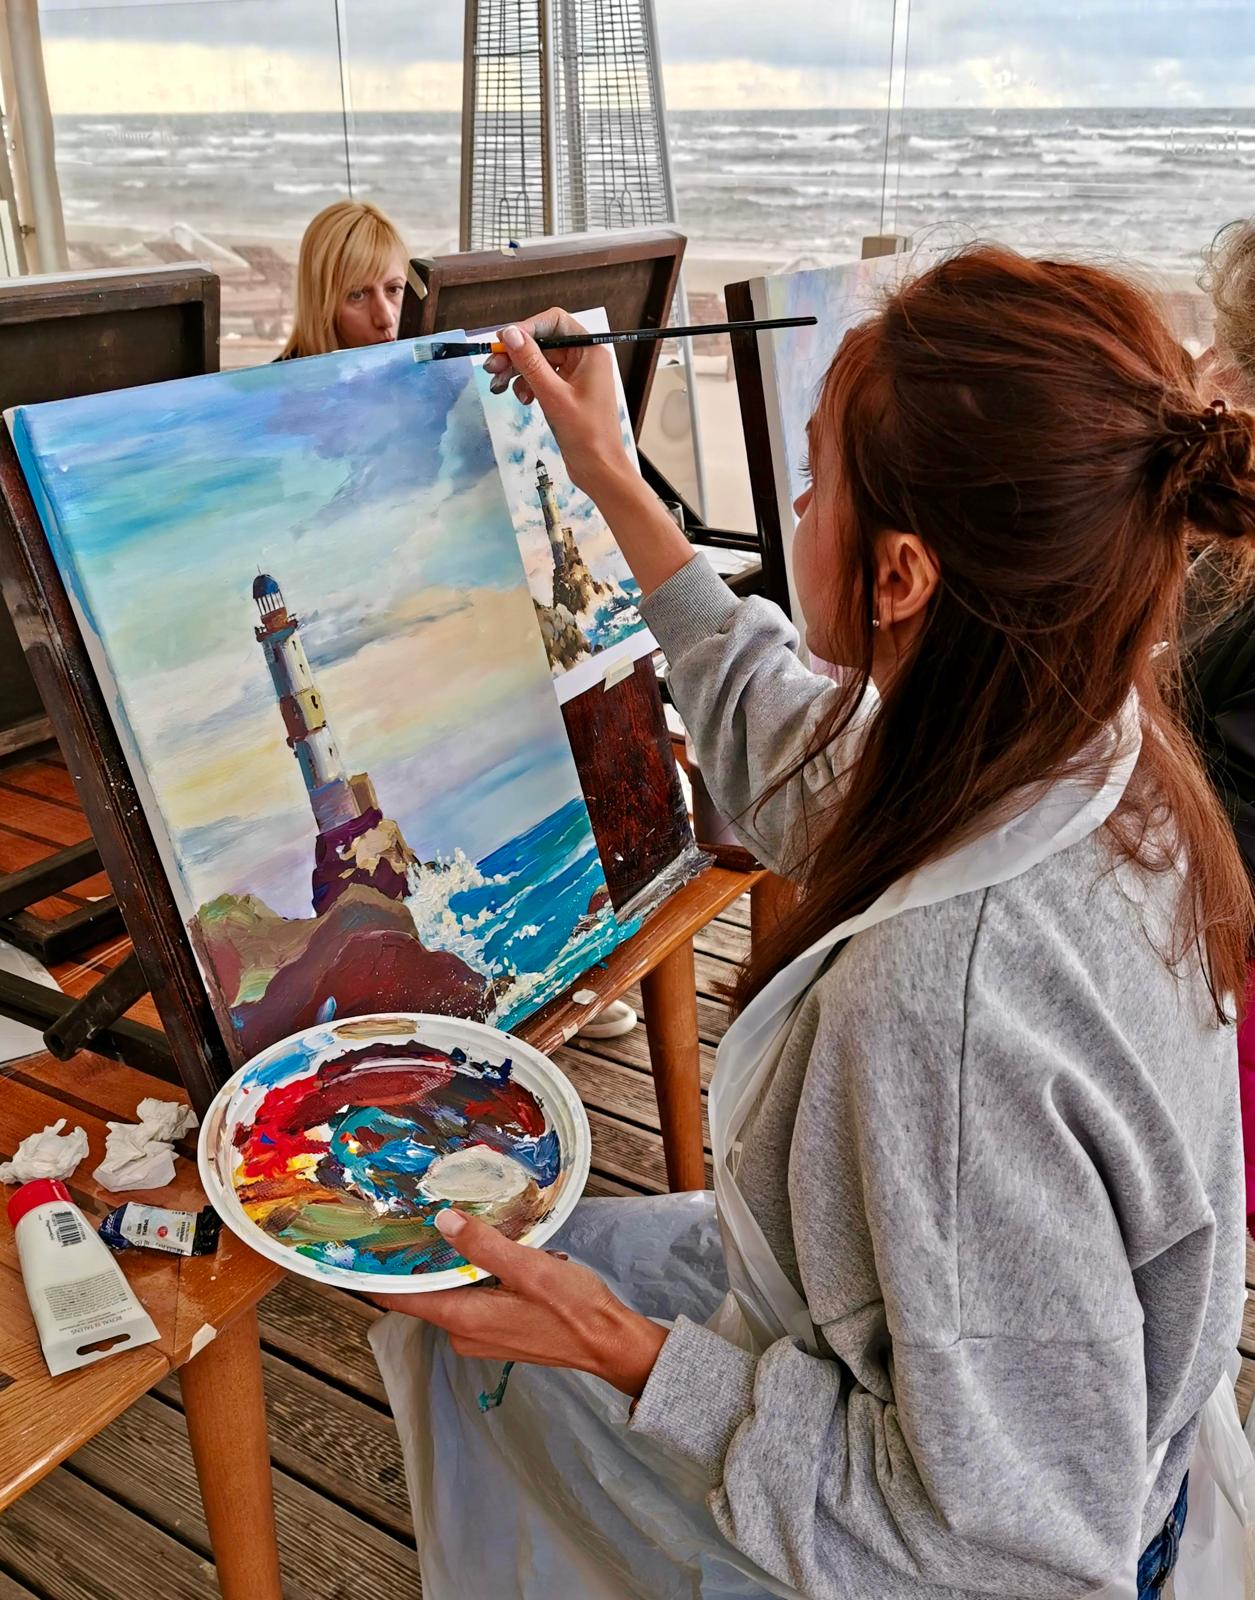 Vasaras glezniecības meistarklase Jūrmalā - X.O Beach Club. Pašu rokām radīta glezna 3 stundu laikā.